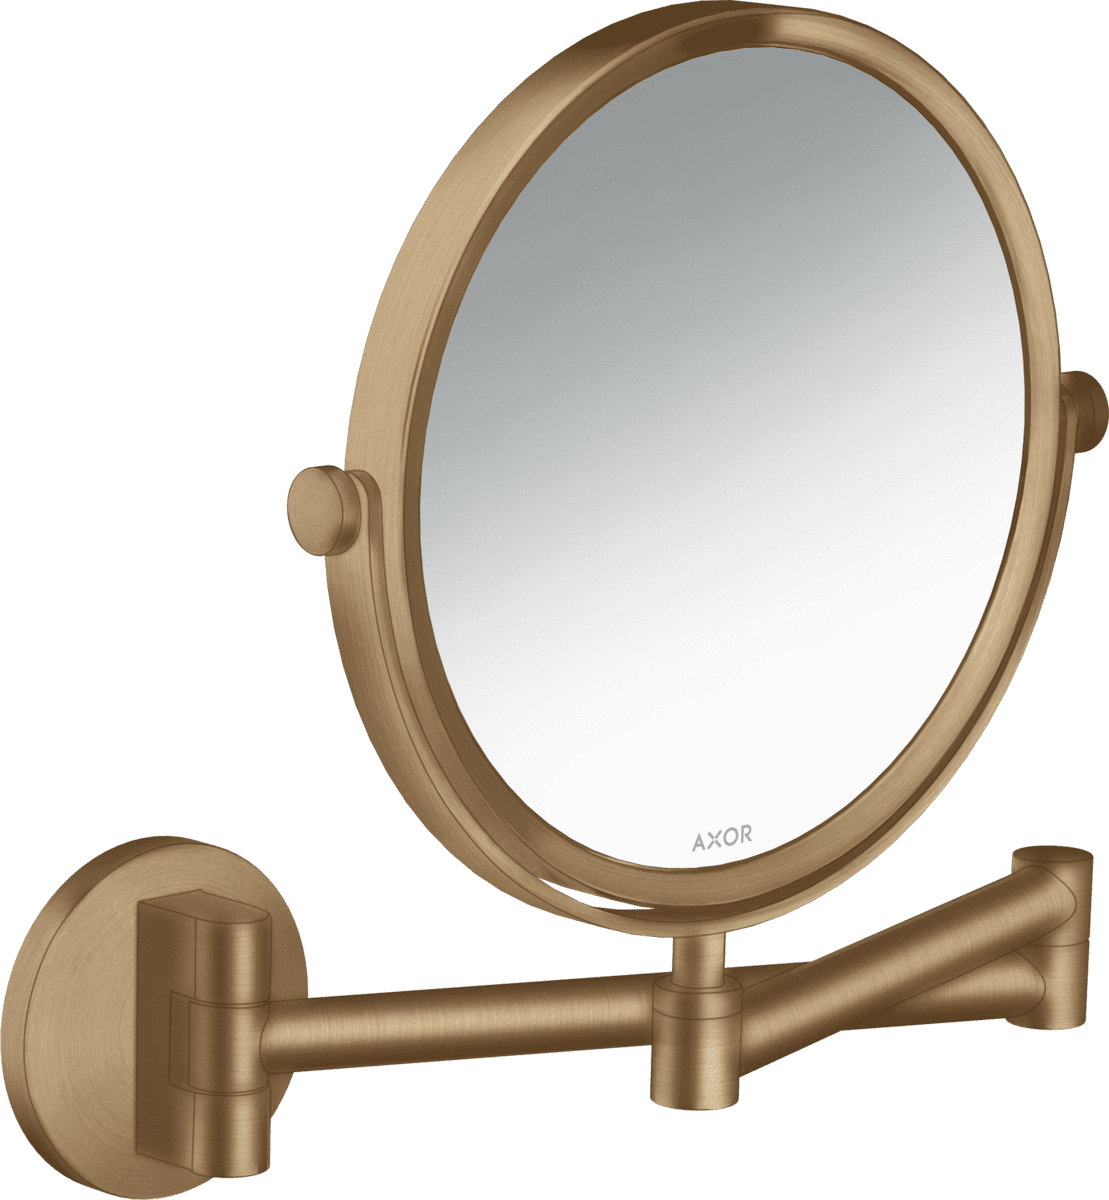 εικόνα του HANSGROHE AXOR Universal Circular Shaving mirror #42849140 - Brushed Bronze